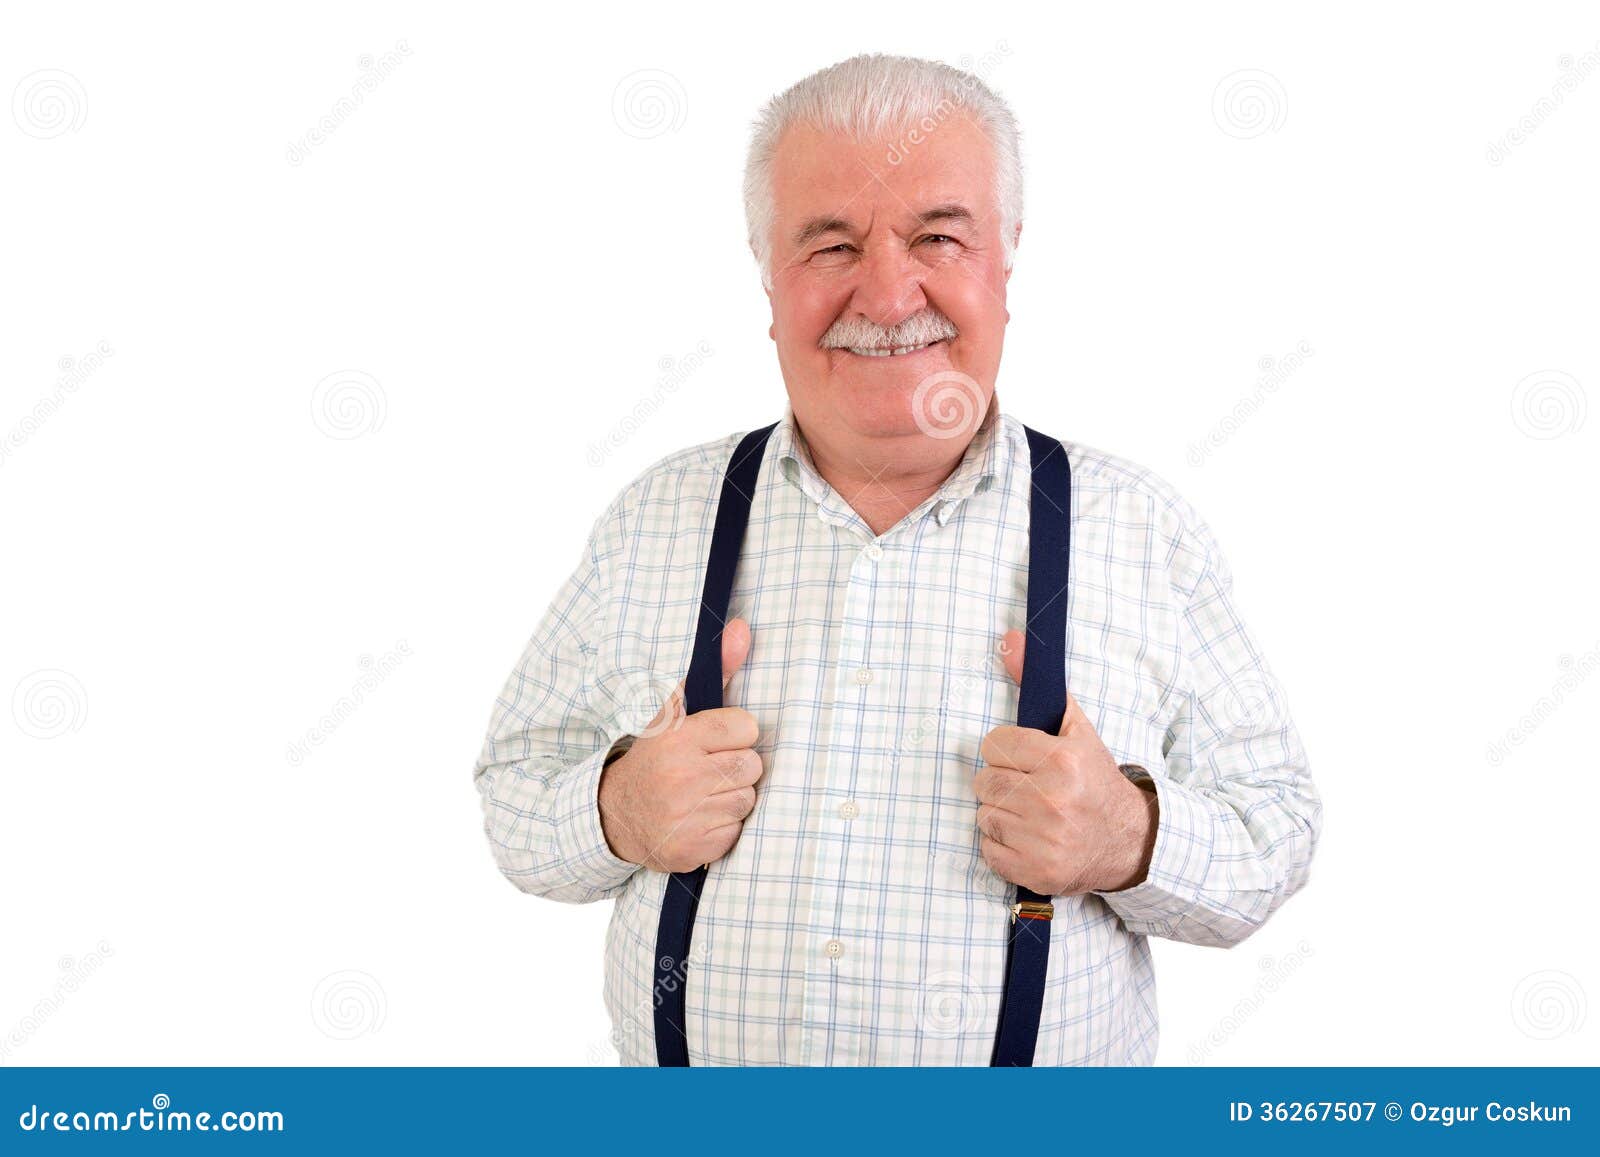 confident senior man holding his suspenders